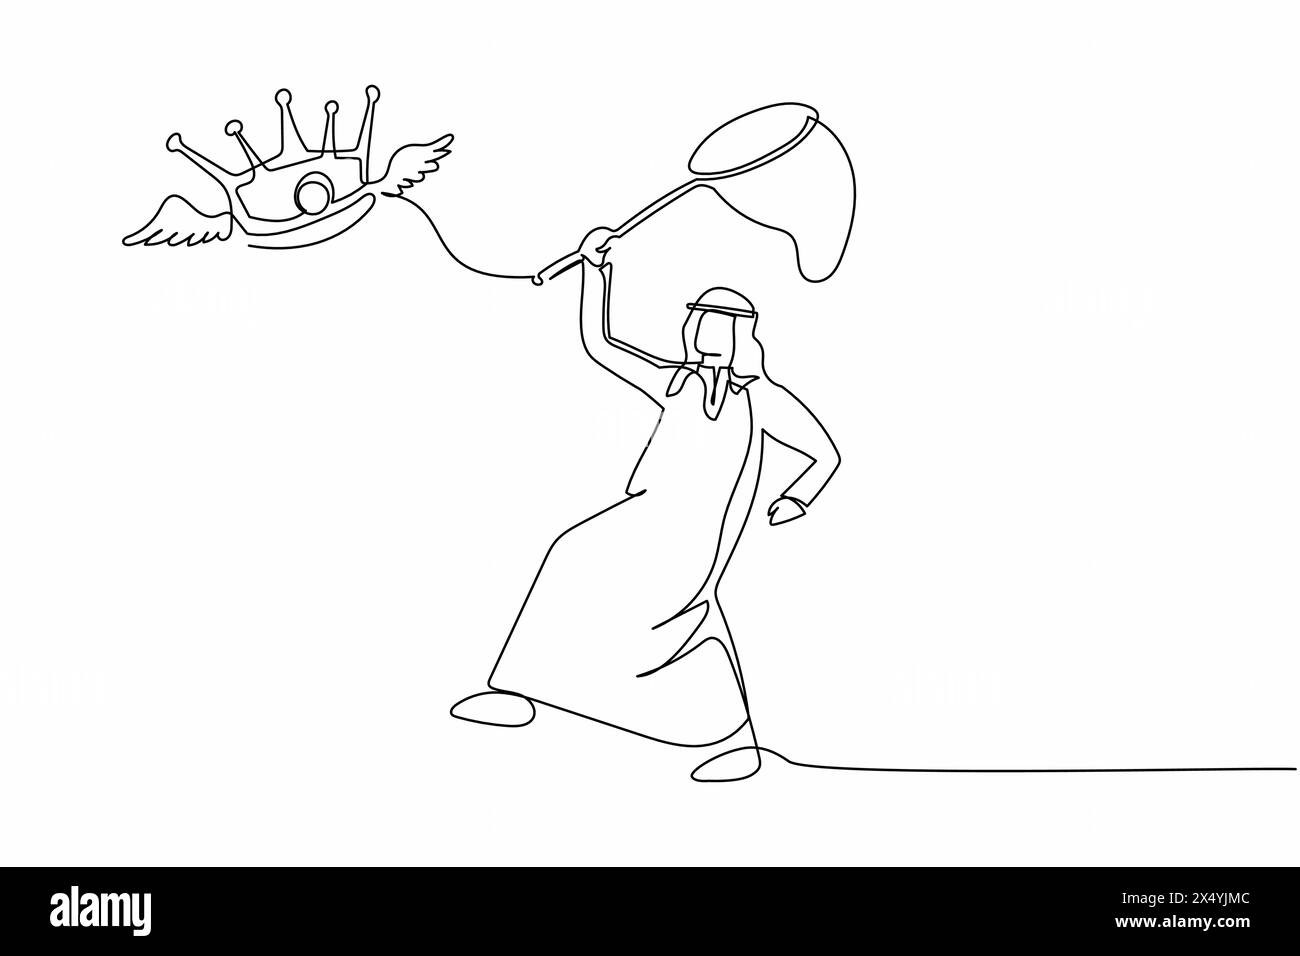 Linea singola continua che disegna un uomo d'affari arabo cerca di catturare la corona volante con la rete a farfalla. Non è riuscito a controllare l'impero degli affari. Metap aziendale Illustrazione Vettoriale